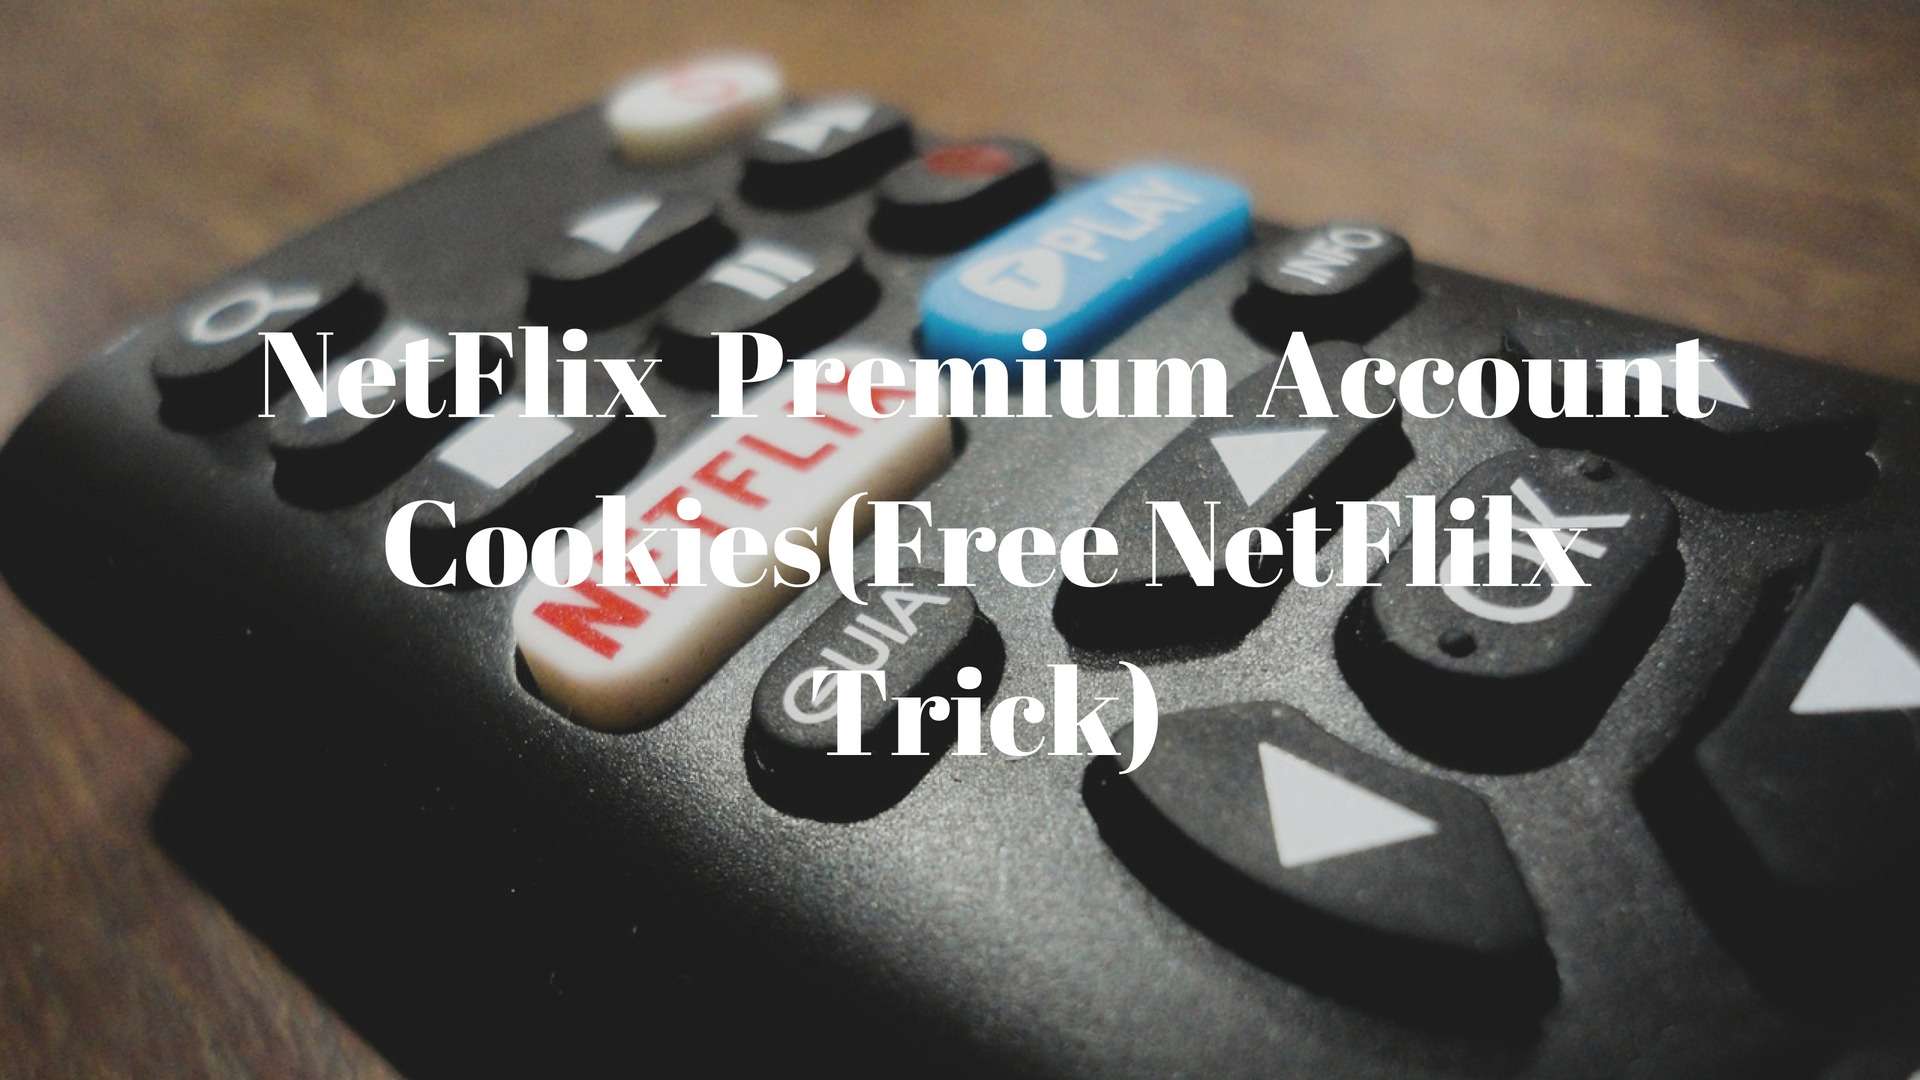 NetFlix Premium Account Cookies